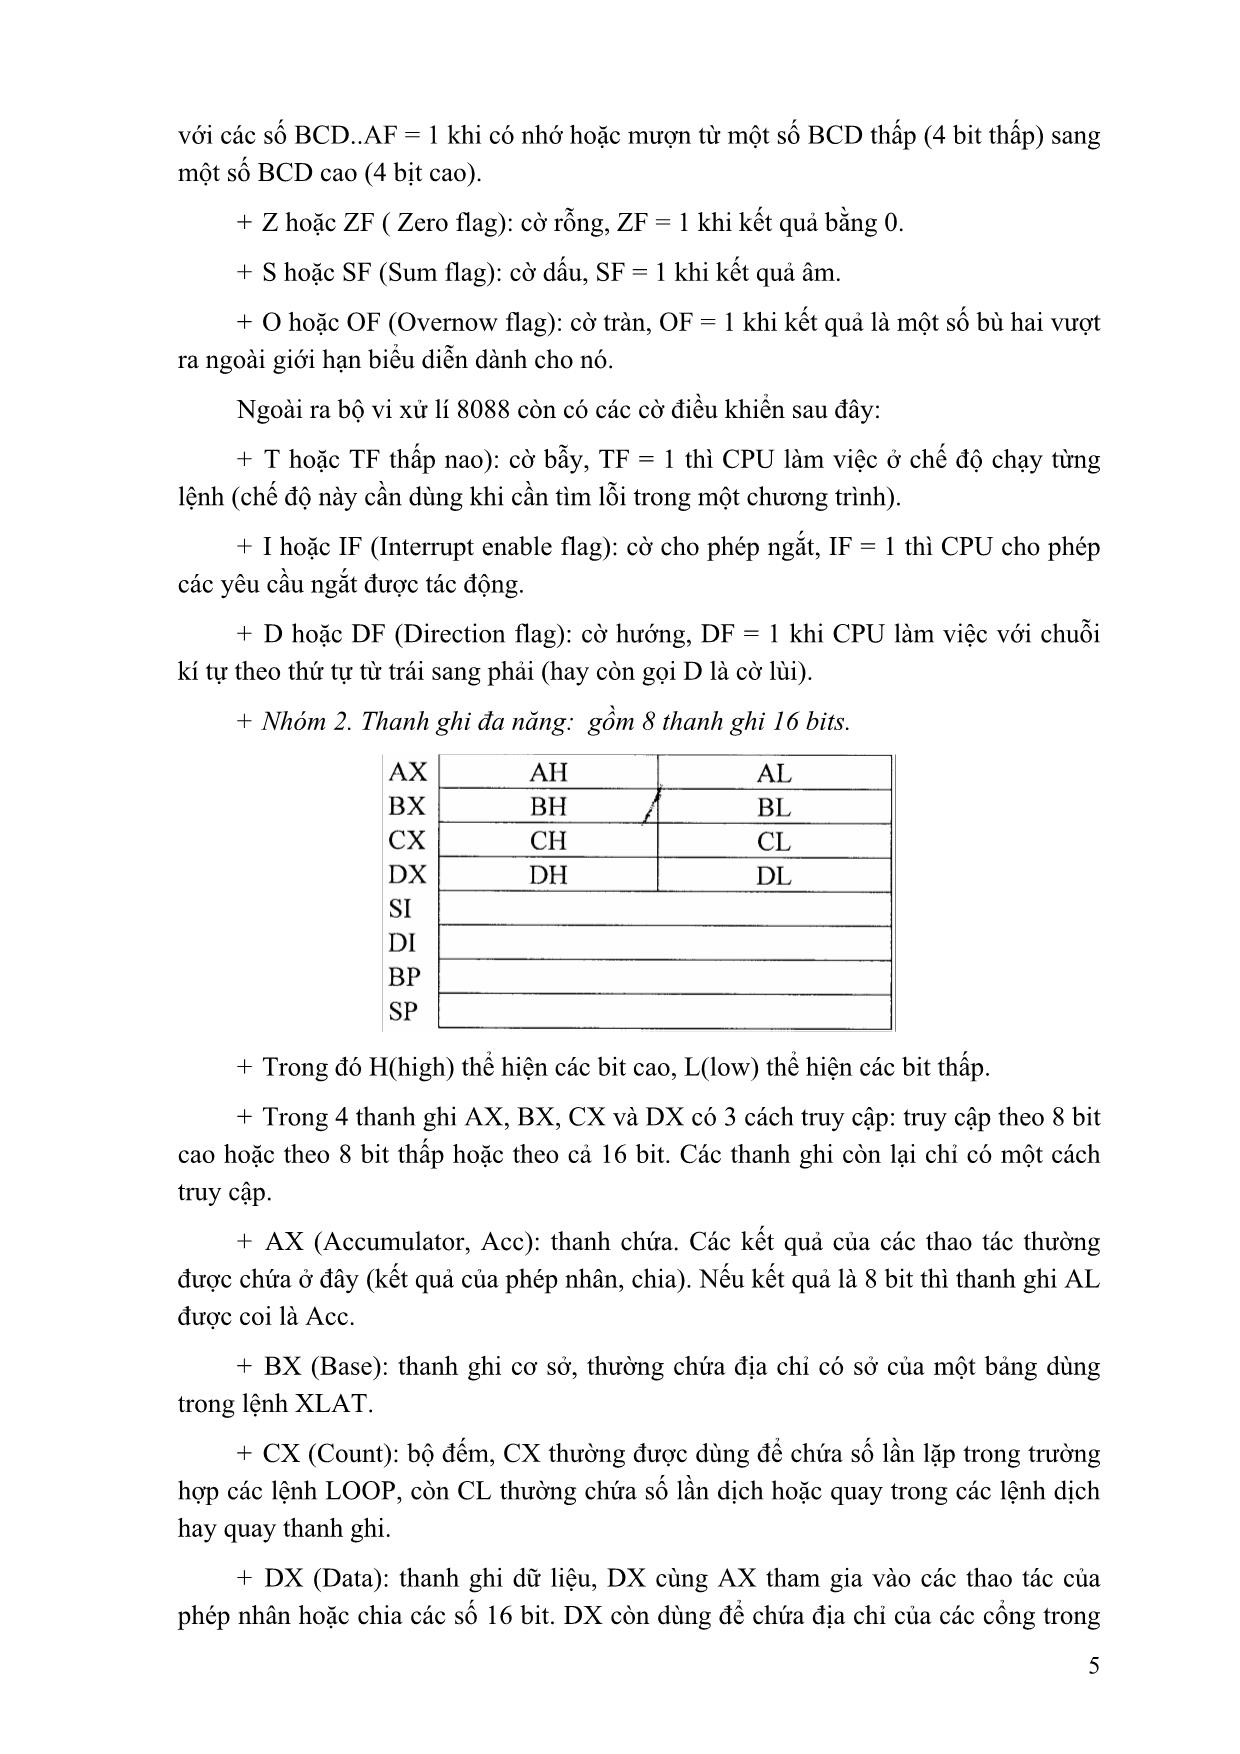 Giáo trình Lập trình hợp ngữ (Phần 1) trang 5